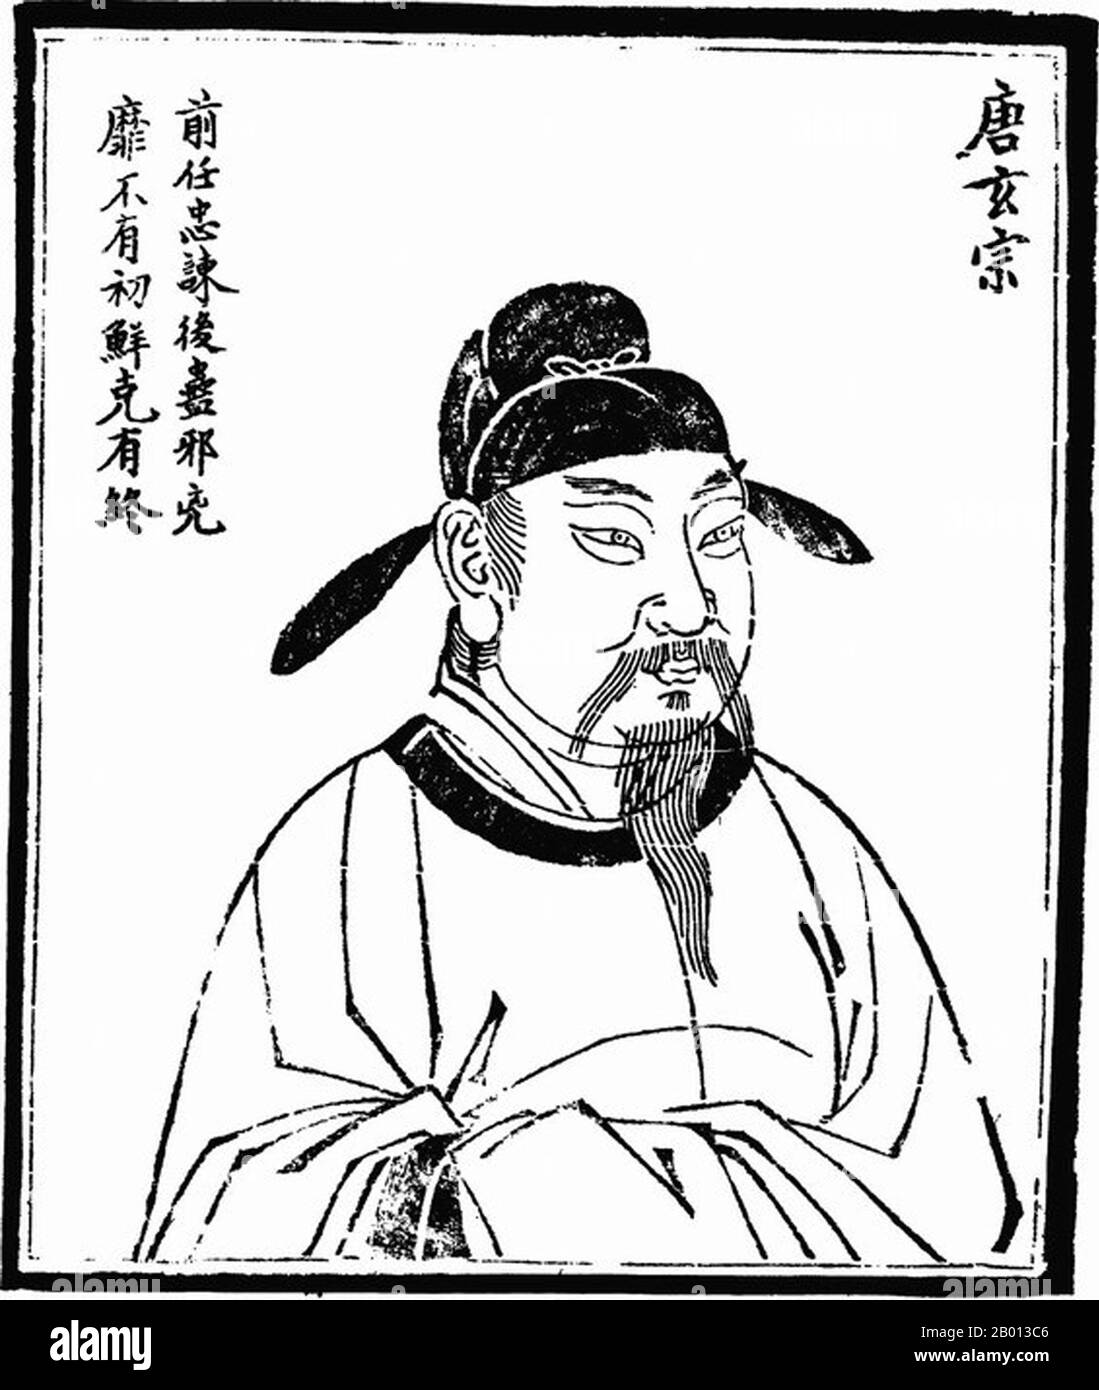 China: Kaiser Xuanzong (Li Longji, 8. September 685-3, Mai 762), 9. Herrscher der Tang Dynastie (r. 712-756). Hochformat, c. 18. Jahrhundert. Kaiser Xuanzong von Tang, auch bekannt als Kaiser Ming von Tang (Tang Minghuang), persönlicher Name Li Longji, bekannt als Wu Longji, war der siebte Kaiser der Tang-Dynastie in China. Seine Herrschaft von 43 Jahren war die längste in der Tang Dynastie. In der frühen Hälfte seiner Regierungszeit war er ein fleißiger und scharfer Herrscher, der von fähigen Kanzlern wie Yao Chong und Song Jing gekonnt unterstützt wurde und ihm zugeschrieben wurde, dass er Tang China zu einem Höhepunkt der Kultur und Macht brachte. Stockfoto